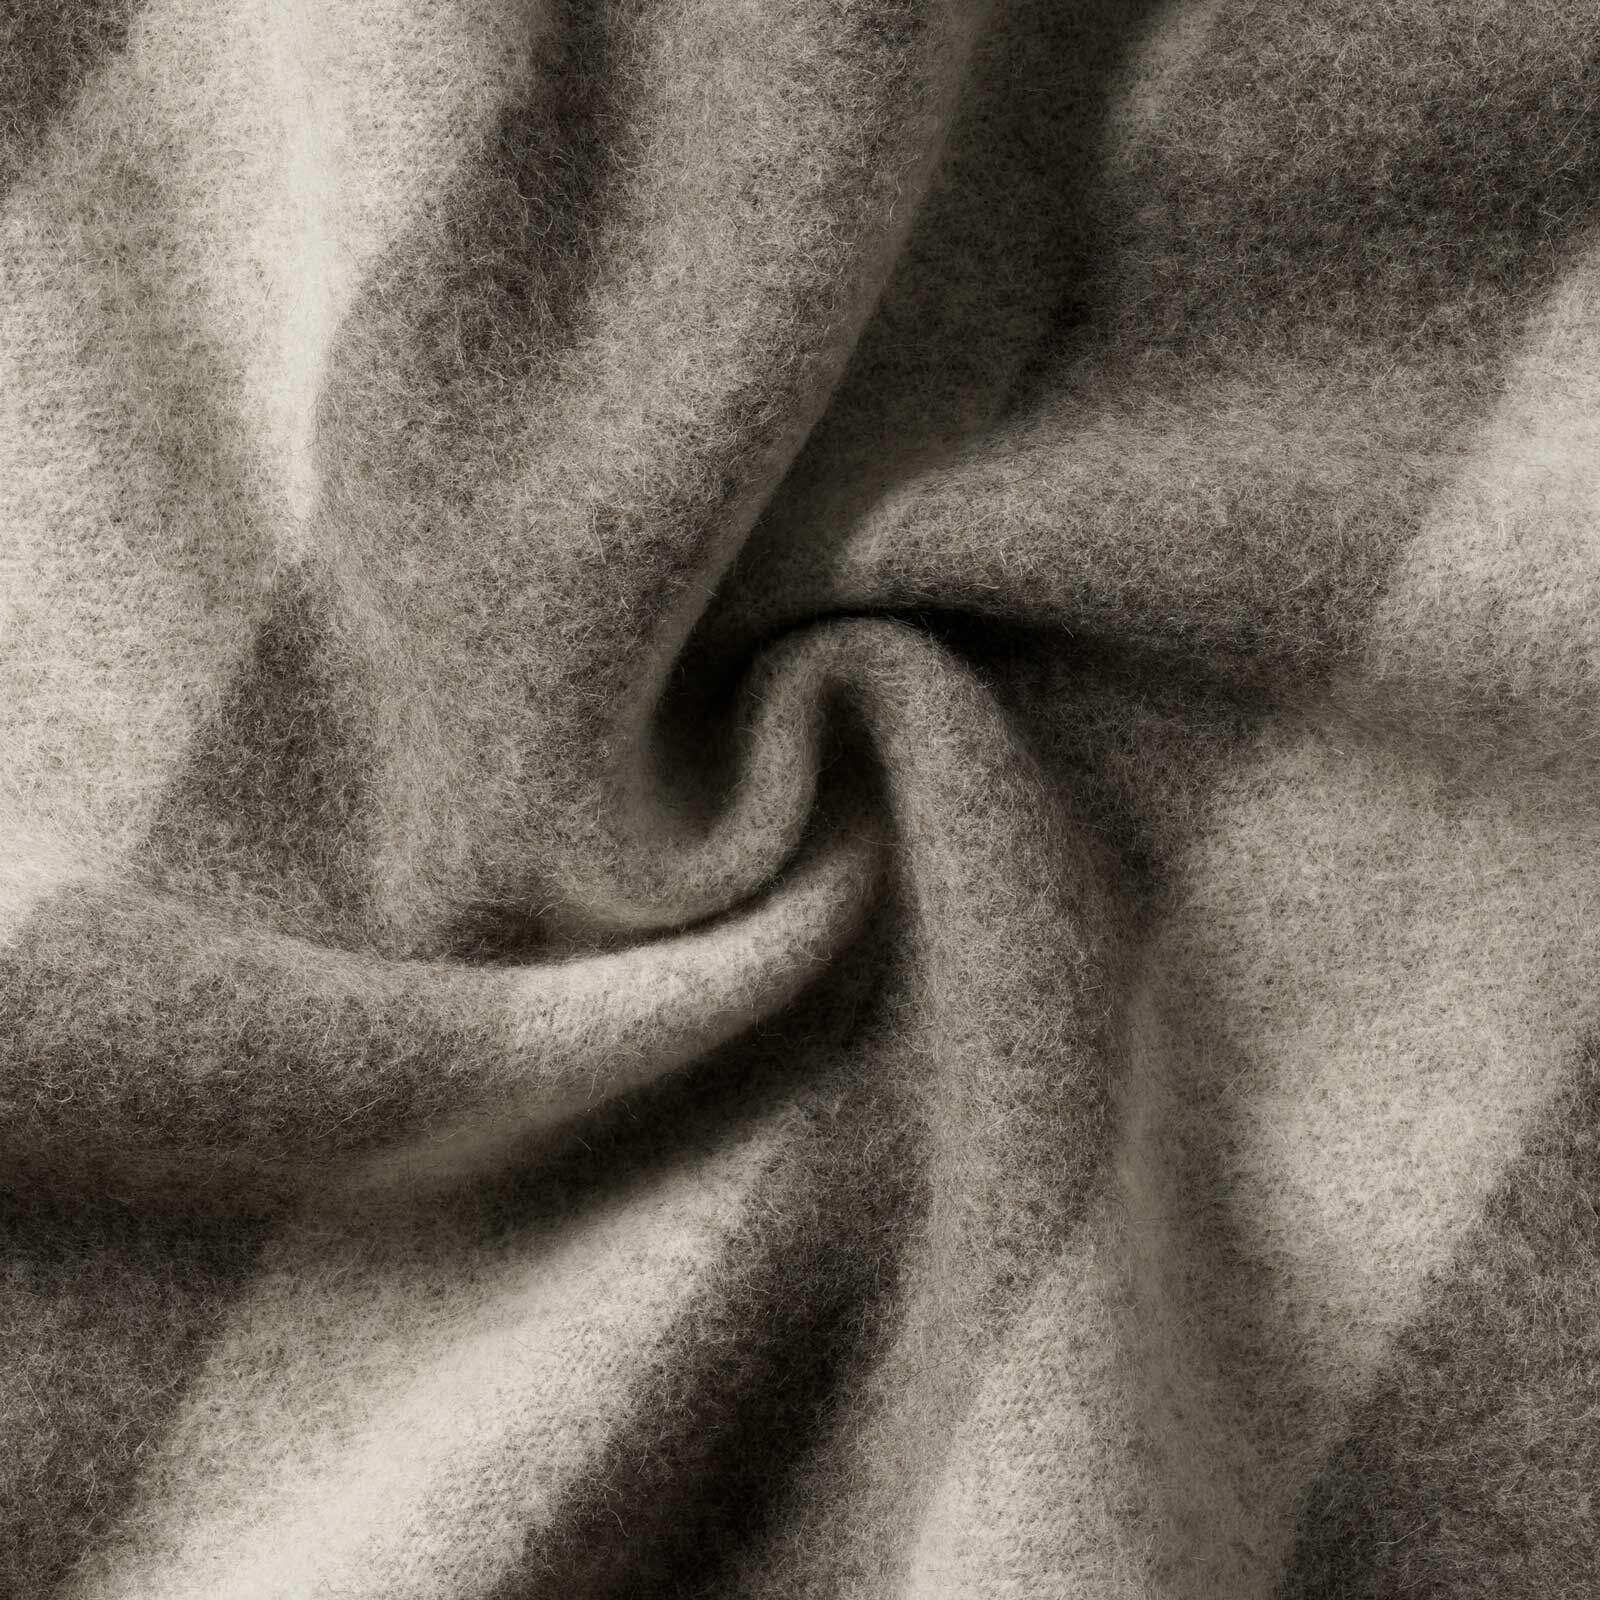 Wool blanket Sonja -  grey-white